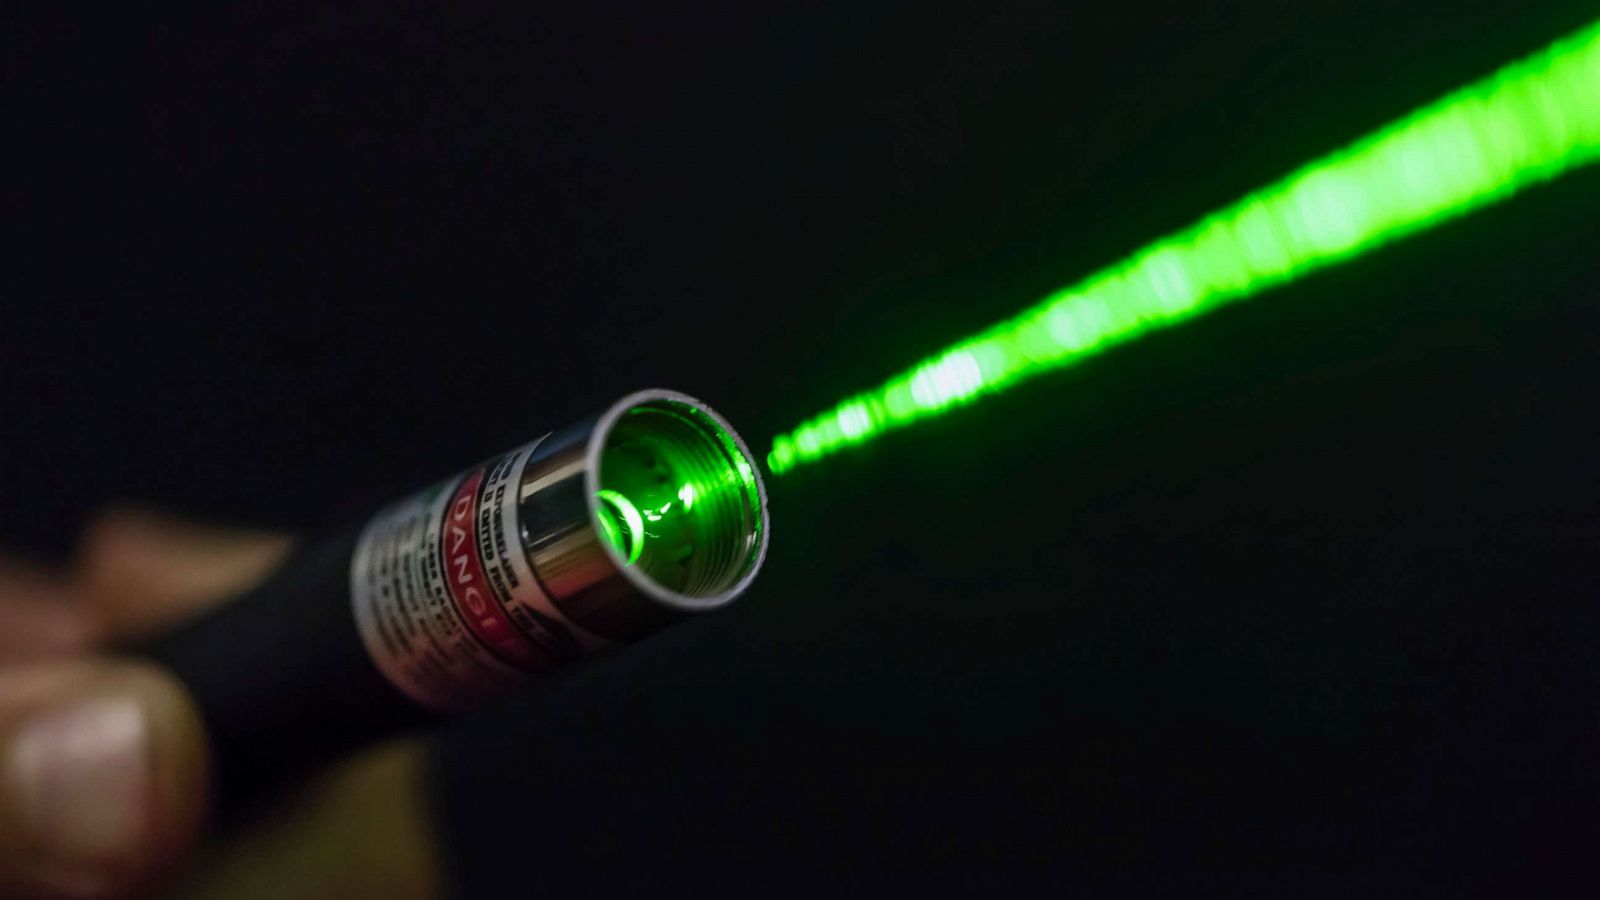 Sức mạnh của tia laser uy lực là thế, nhưng hóa ra nó còn có công dụng ai nghe cũng thấy khó tin: &quot;Chữa ngáy&quot;! - Ảnh 1.